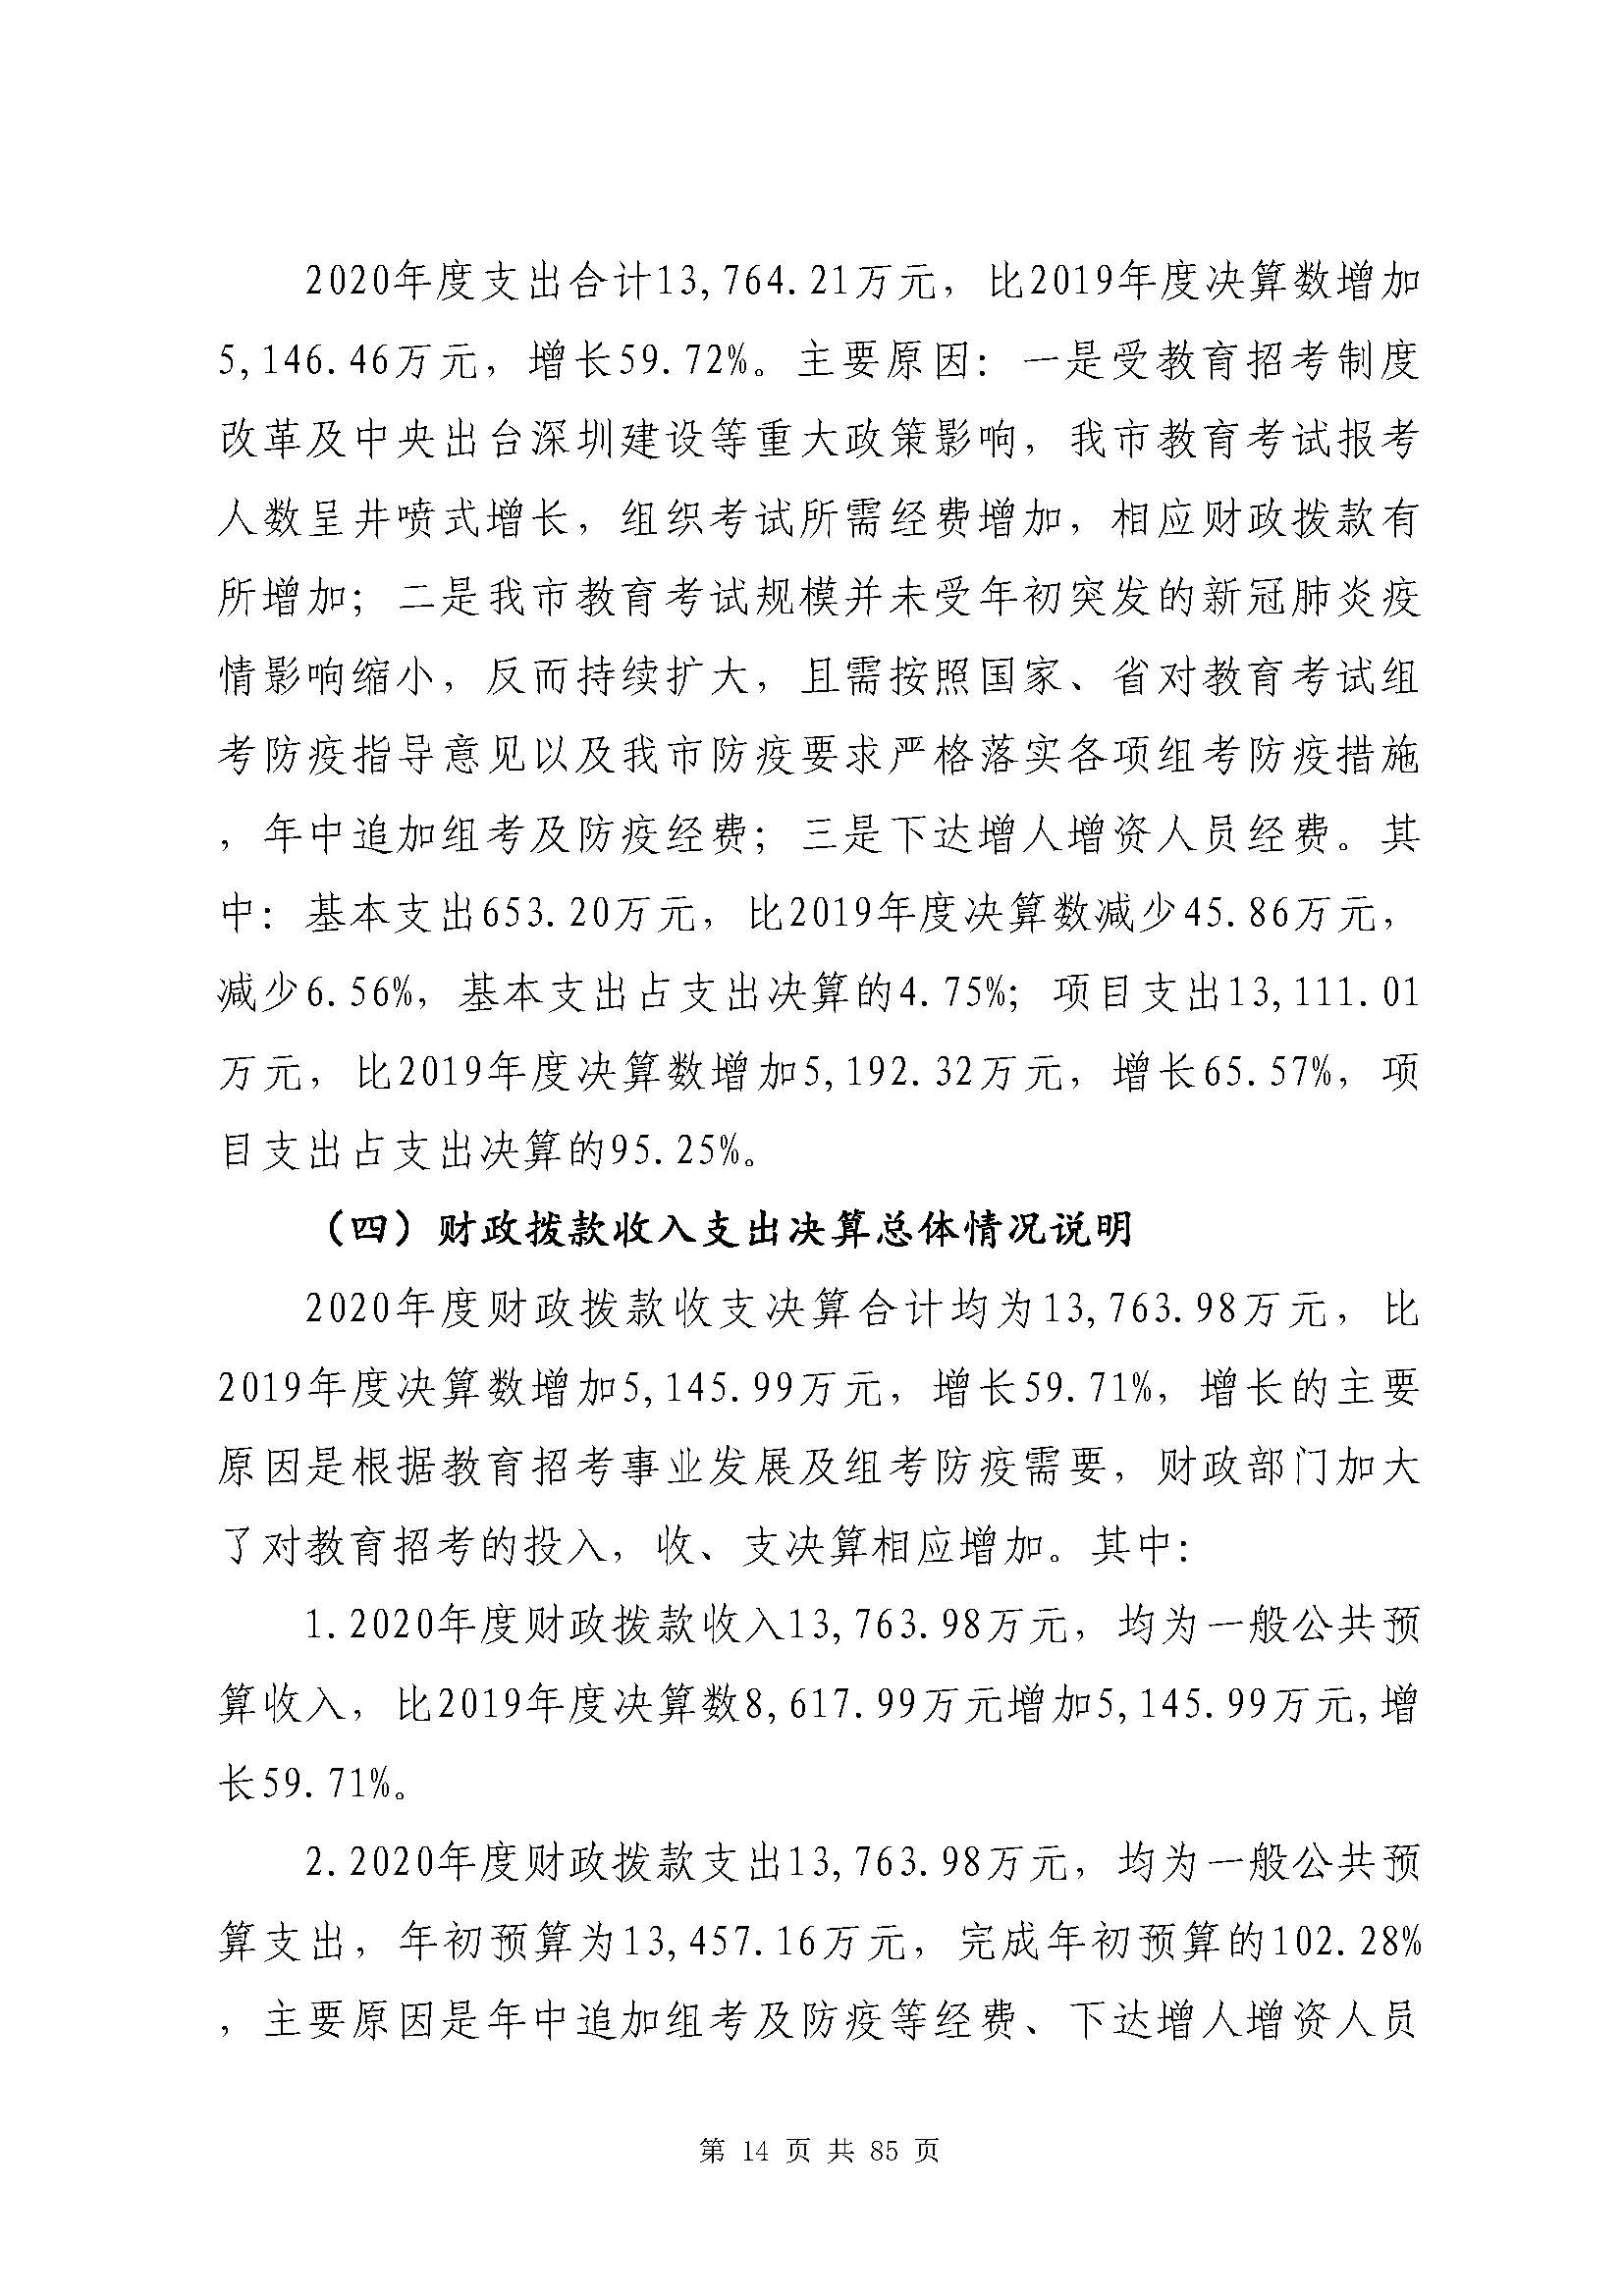 深圳市招生考试办公室2020年度部门决算_页面_15.jpg